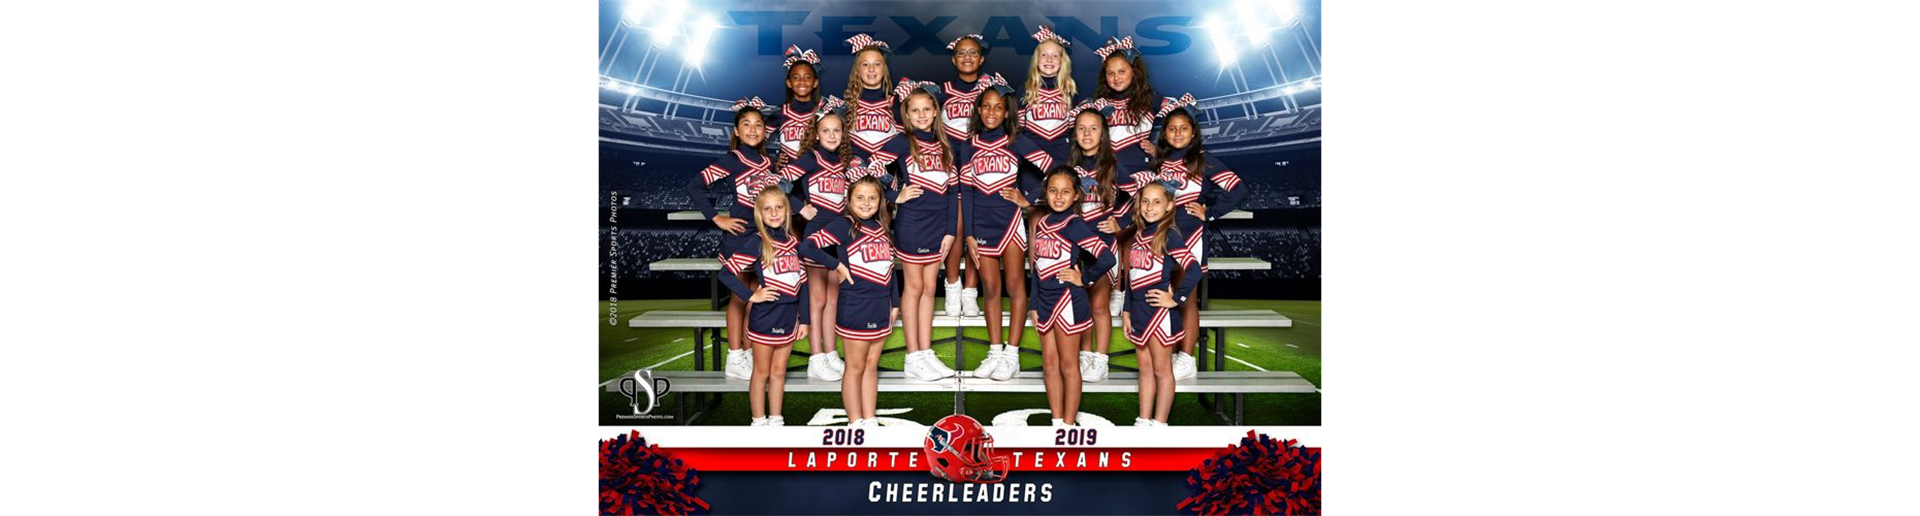 2018 LP Texans Cheerleaders 